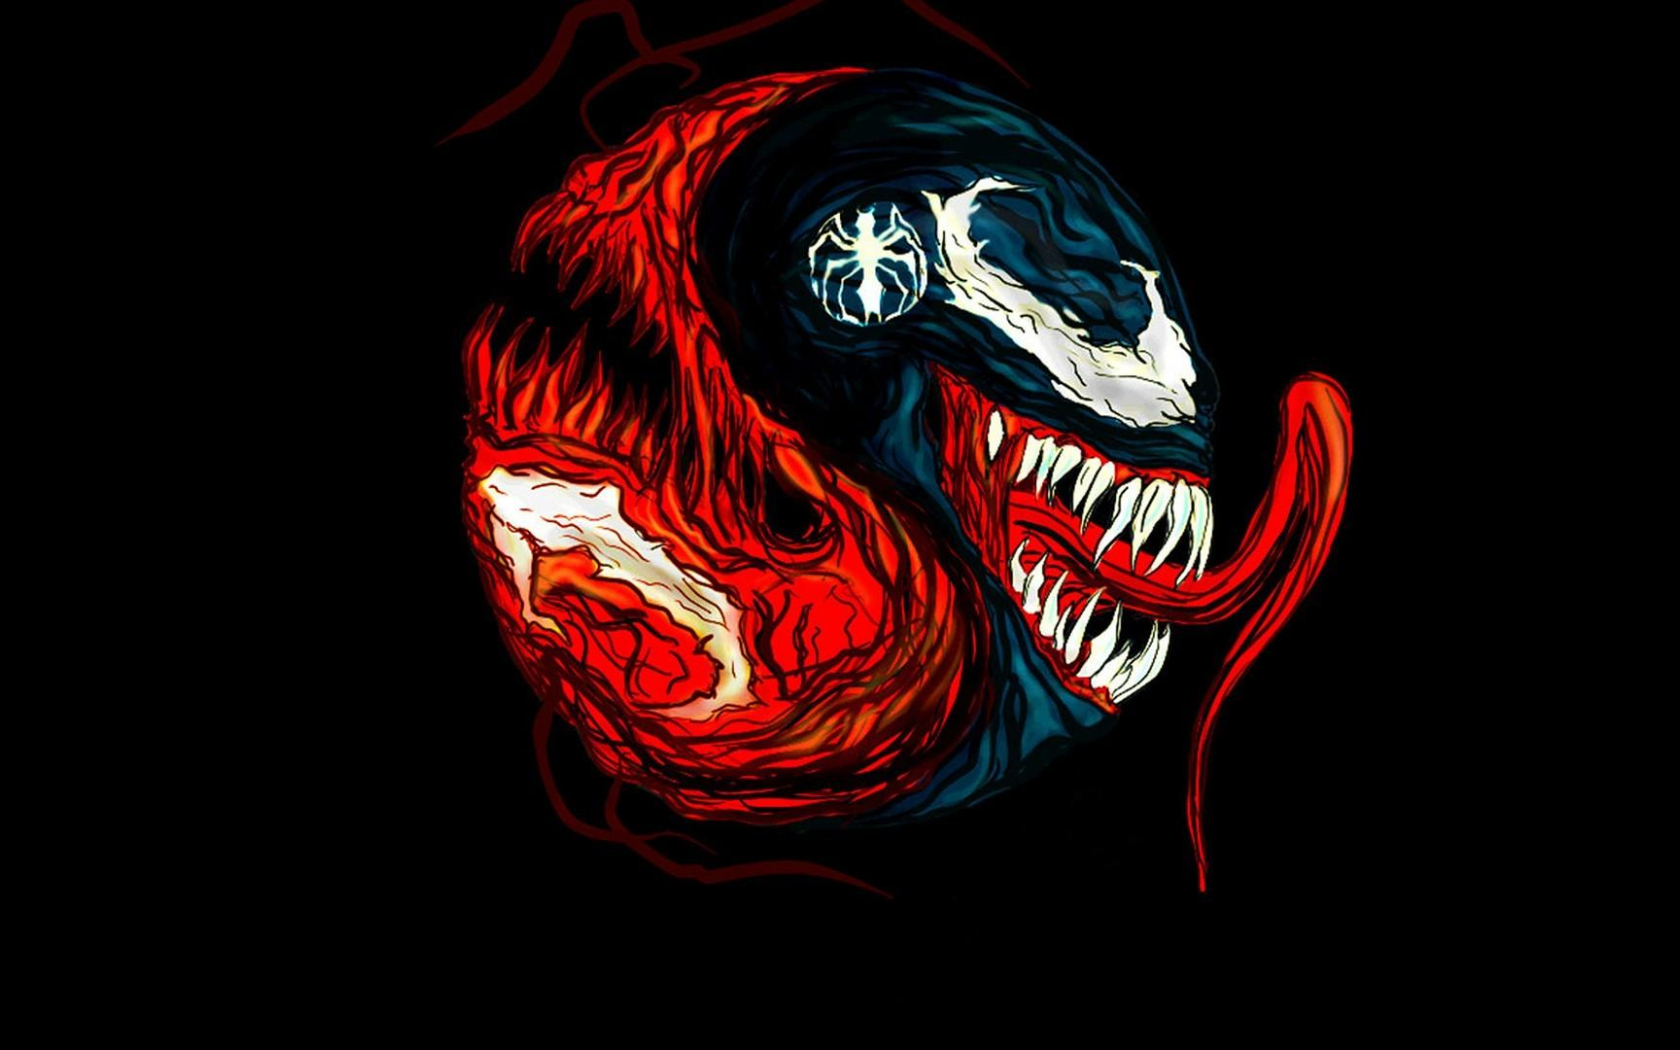 Free download Carnage marvel comics venom black background fan art wallpaper [1920x1080] for your Desktop, Mobile & Tablet. Explore Carnage Wallpaper HD. Carnage Wallpaper, Venom and Carnage Wallpaper, Primal Carnage Wallpaper